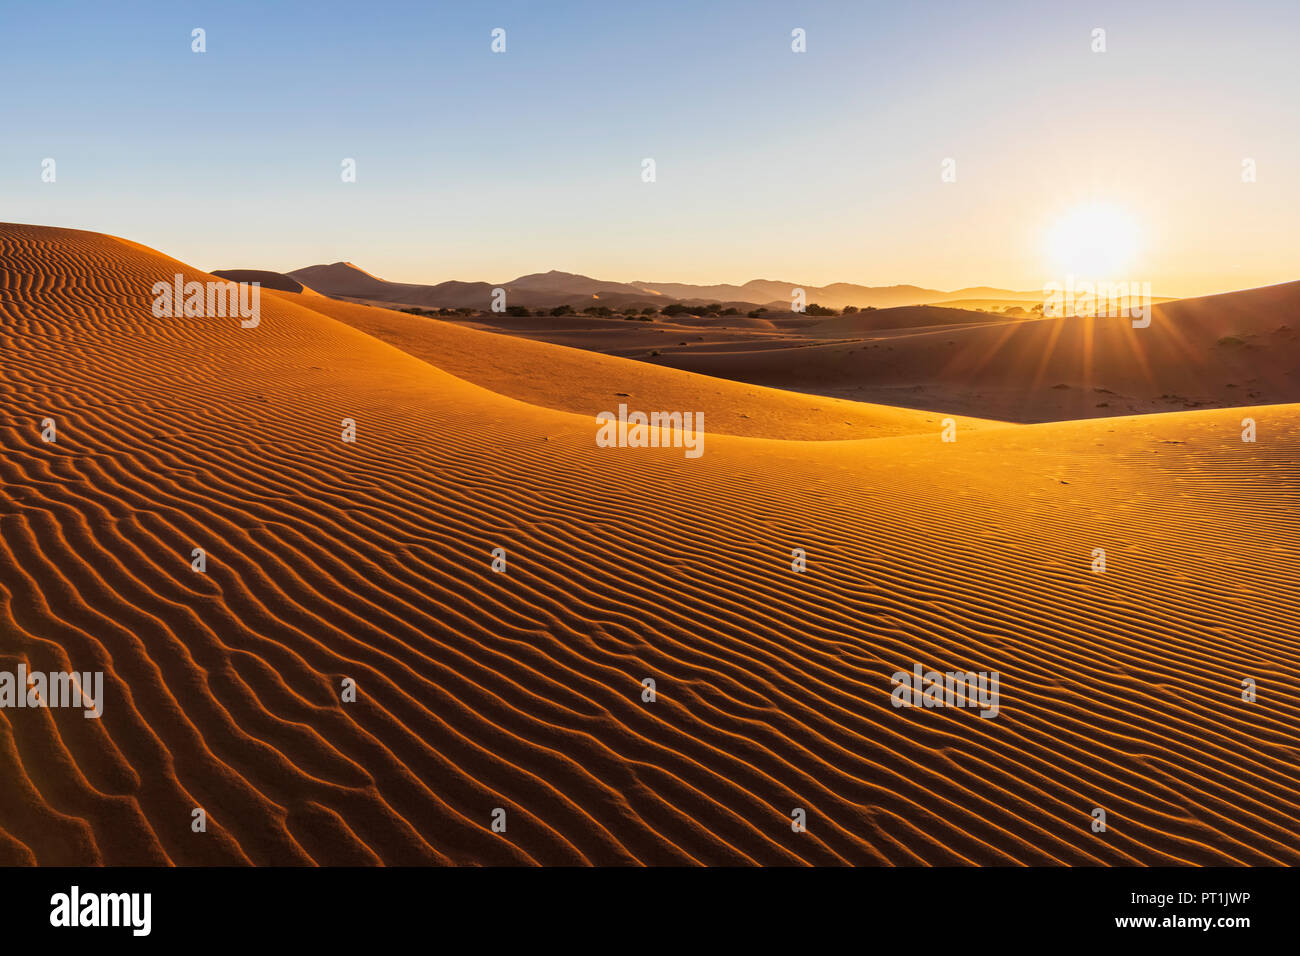 Africa, Namibia, Namib desert, Naukluft National Park, sand dunes in the morning light against the morning sun Stock Photo